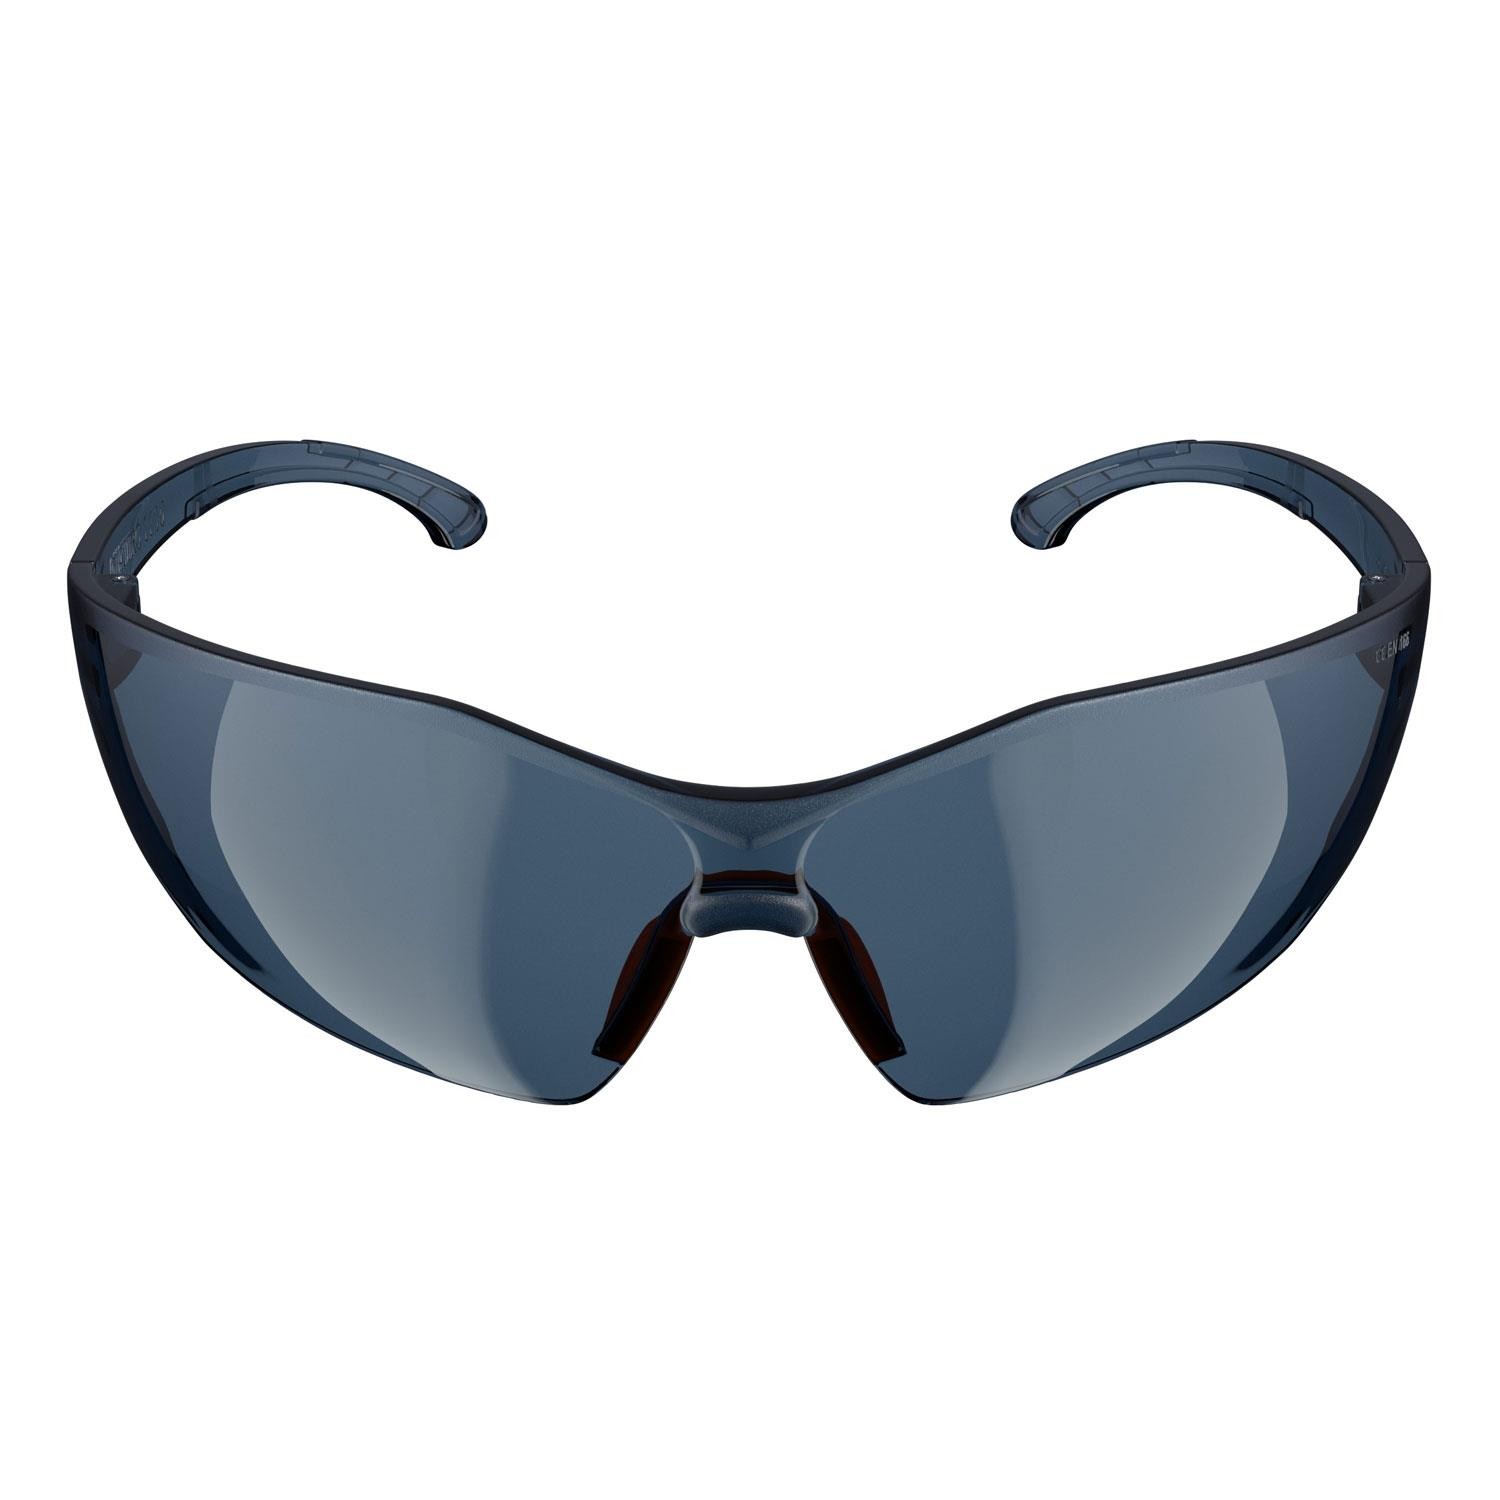 Baymax İş Güvenlik Güvenliği Gözlüğü UV Korumalı Koruyucu Gözlük Füme S1100 Toptan Satış